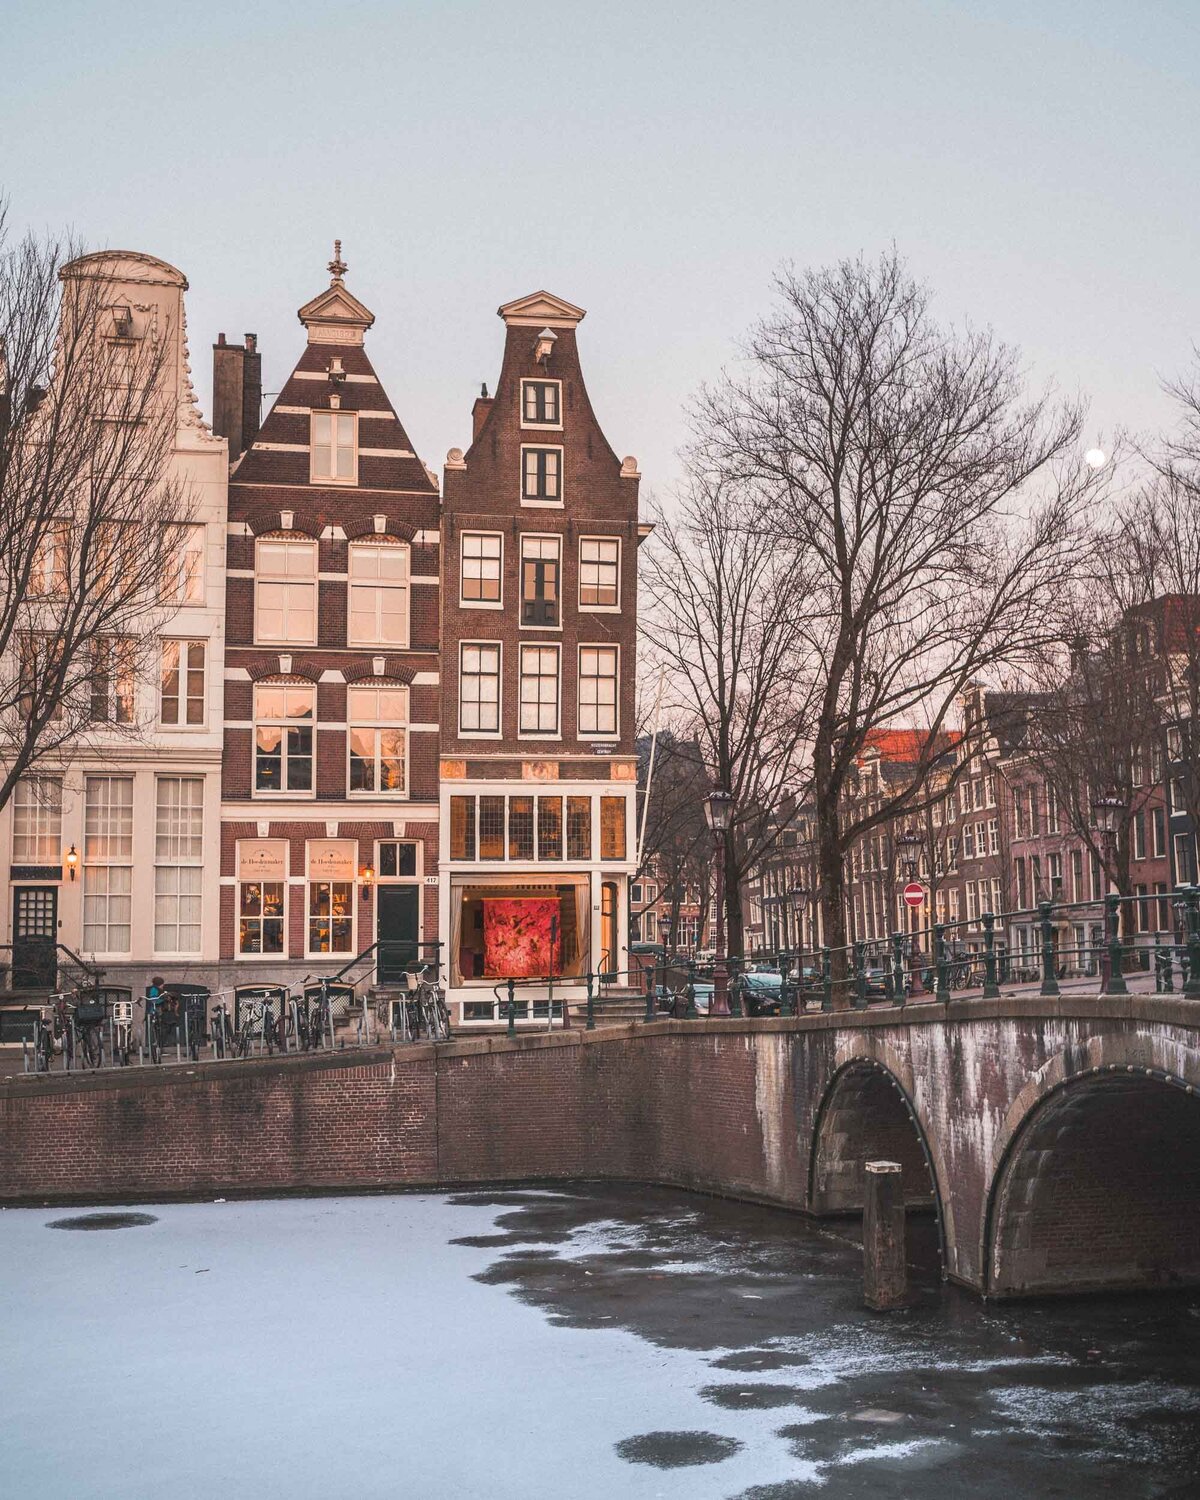 Frozen-Canals-Amsterdam-Netherlands-Winter-FindUsLost-01138